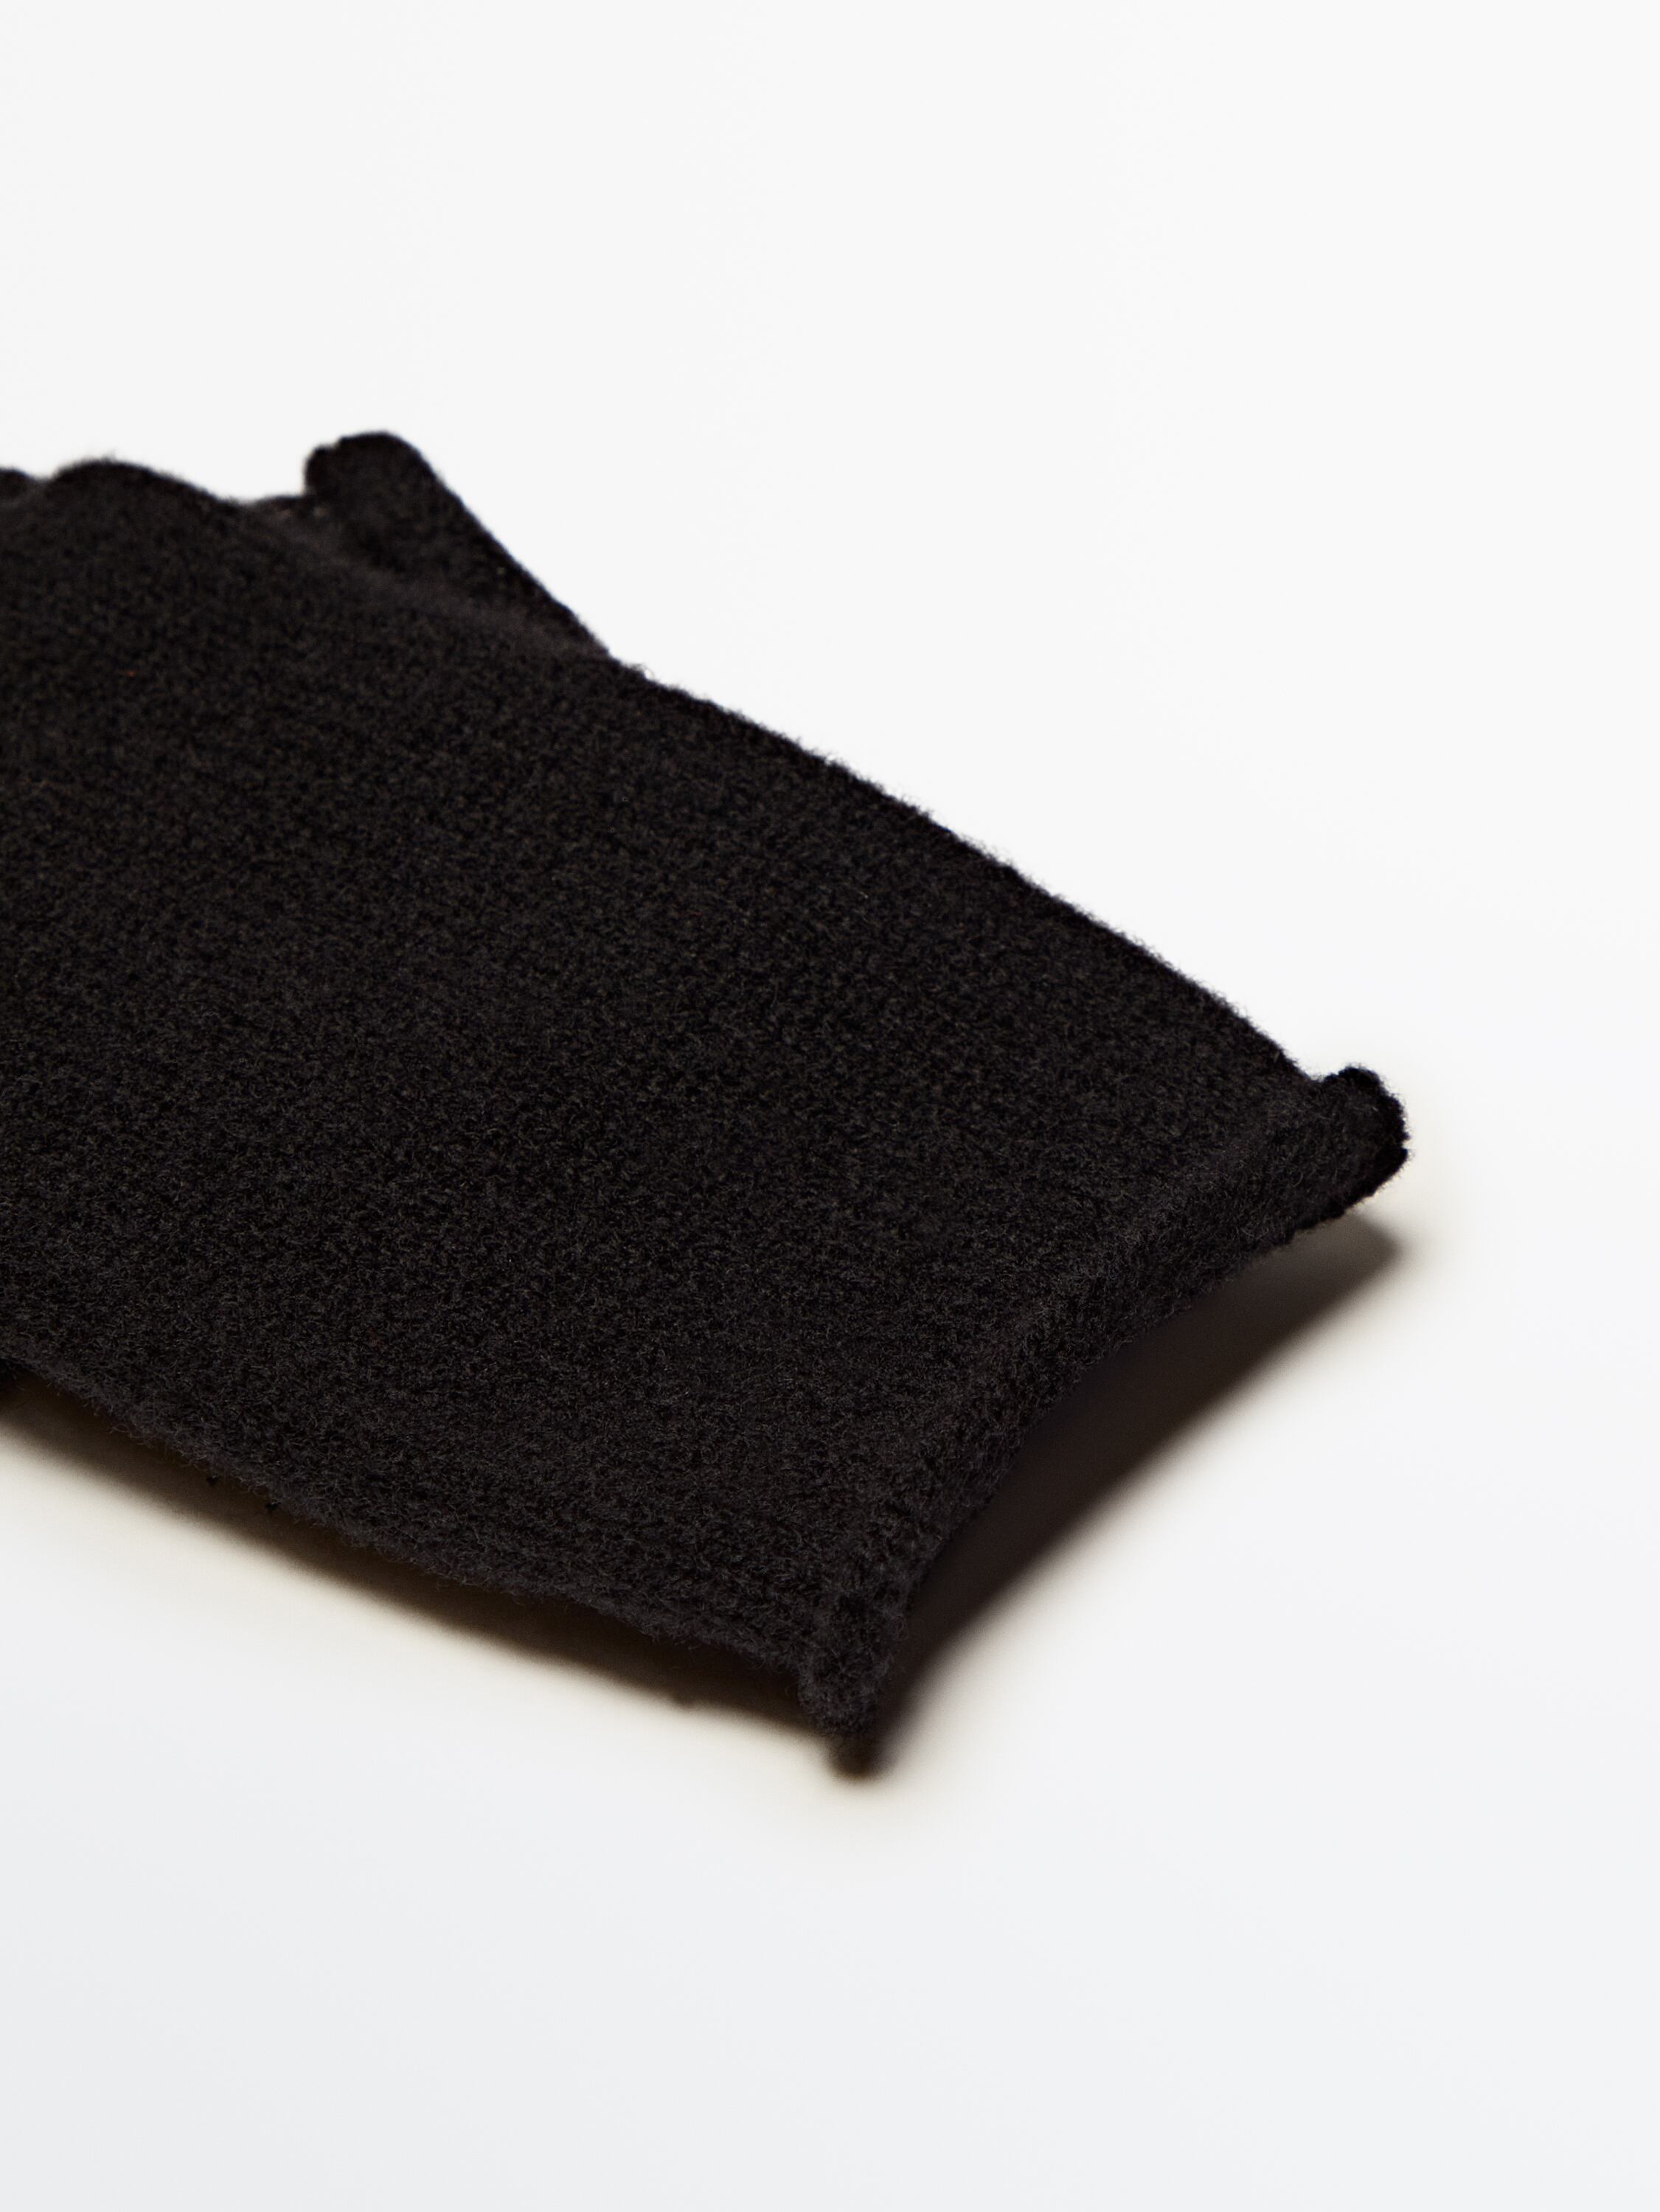 Wool blend fine knit touchscreen gloves